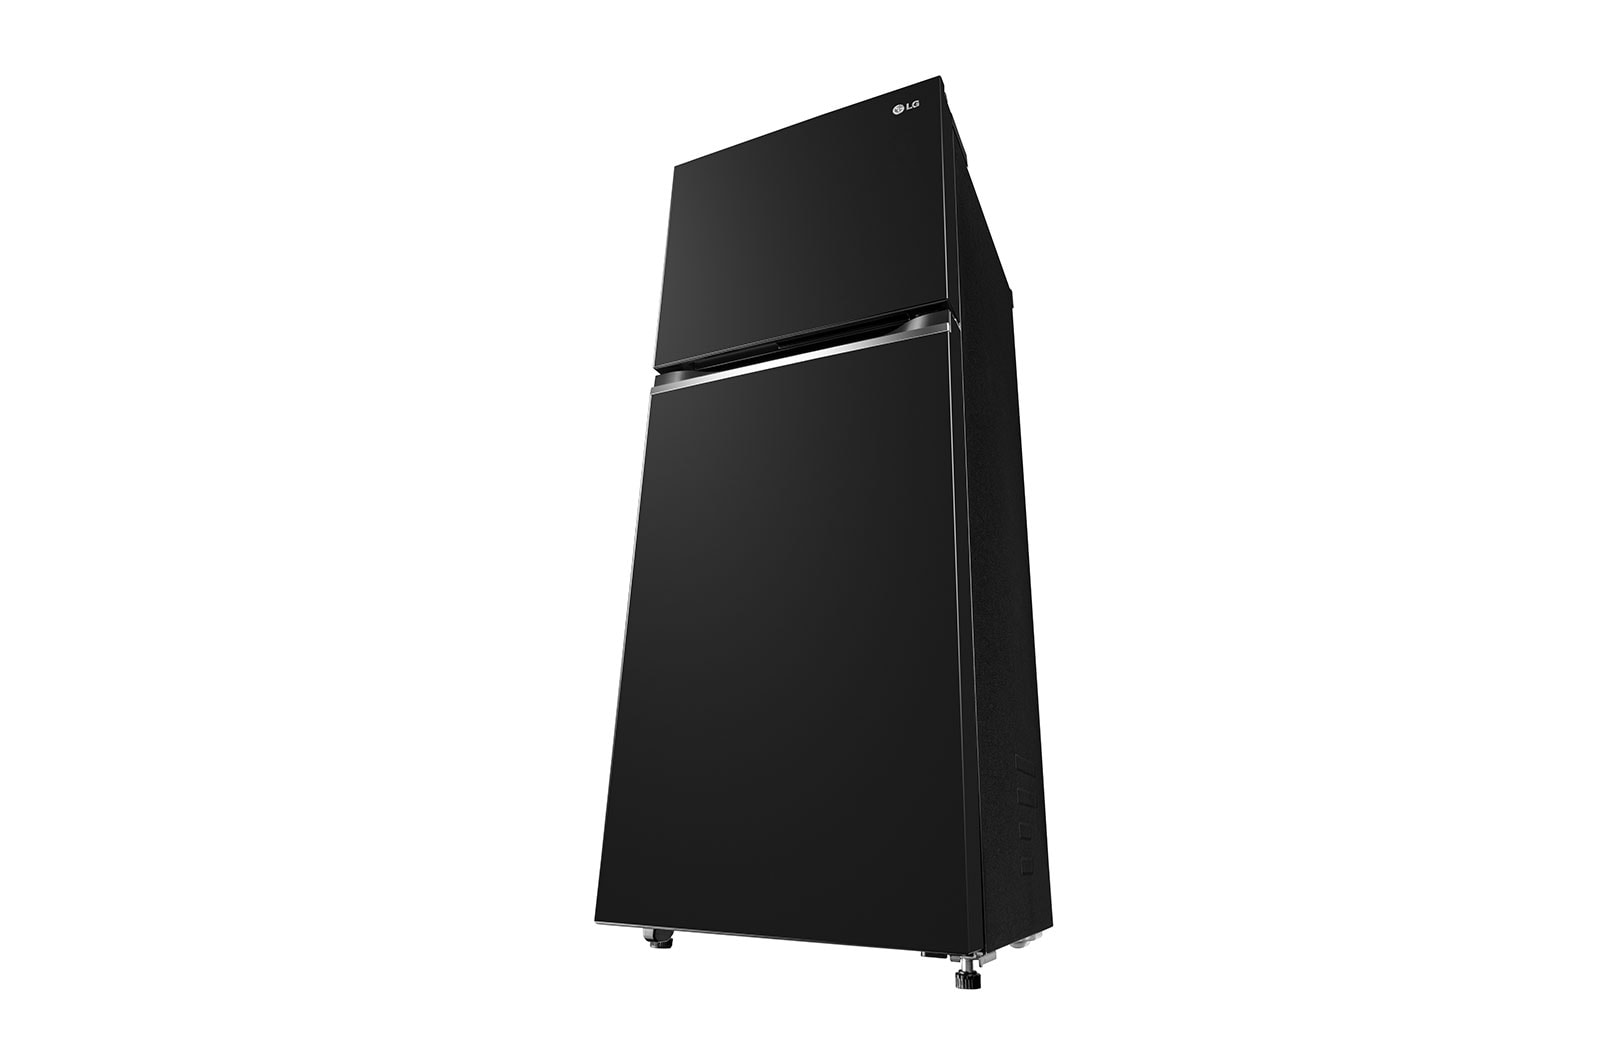 Tủ lạnh LG Inverter 217L GV-B212WB